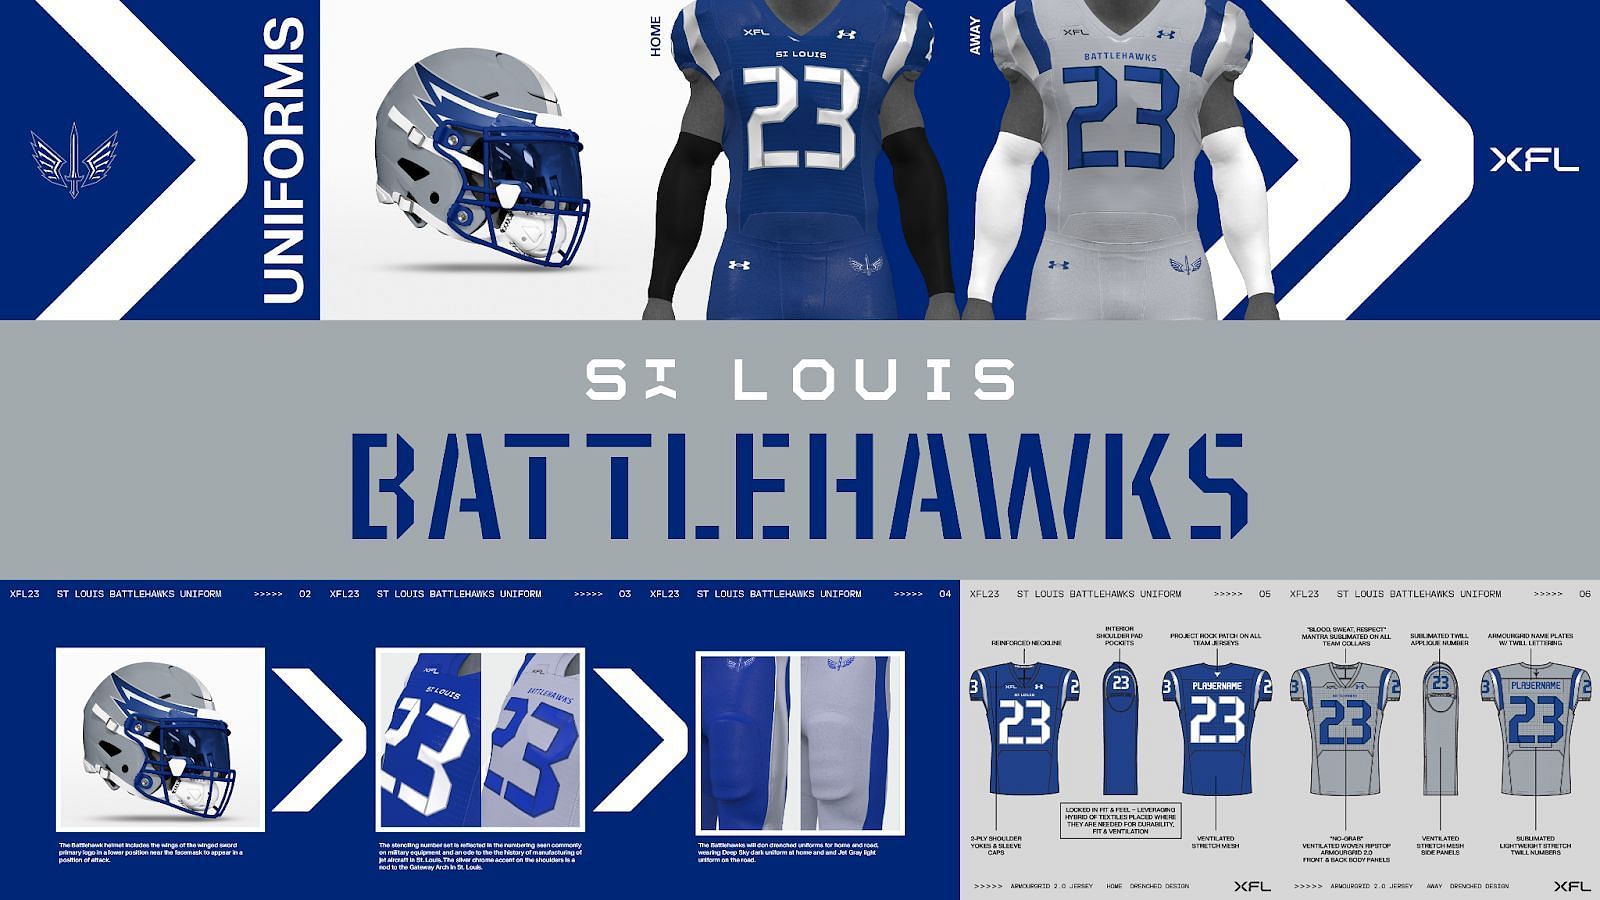 St. Louis Battlehawks News, Schedule, Roster, & More